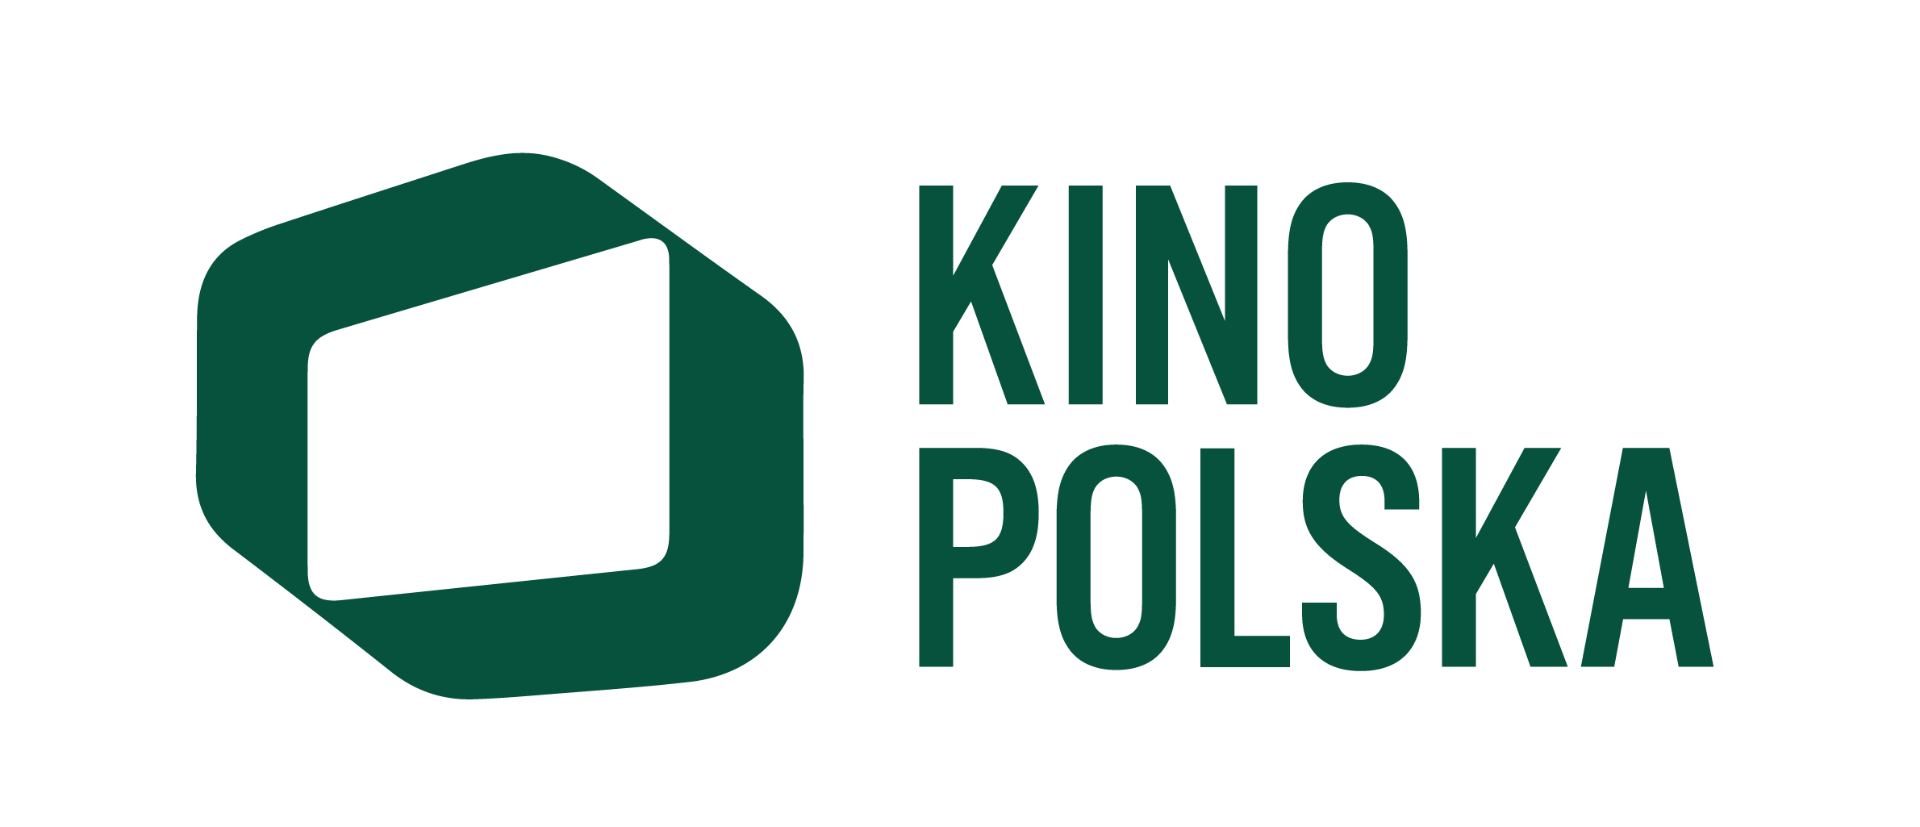 kino polska 06.24.png